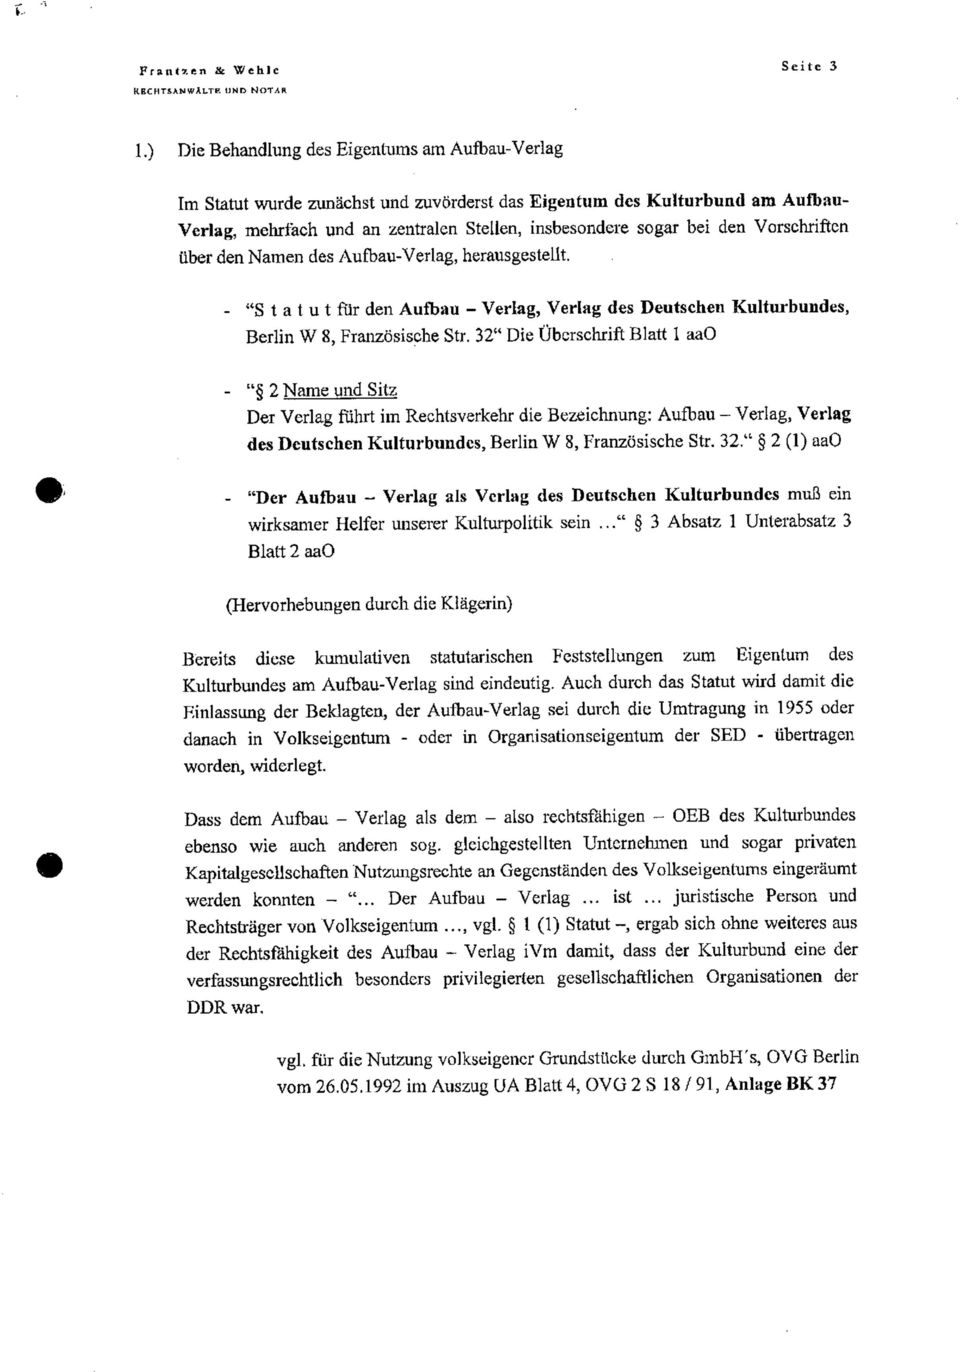 32" Die Überschrift Blatt 1 aao - " 2 Name und Sitz Der Verlag führt im Rechtsverkehr die Bezeichnung: Aufbau - Verlag, Verlag des Deutschen Kulturbundes, Berlin W 8, Französische Str. 32.